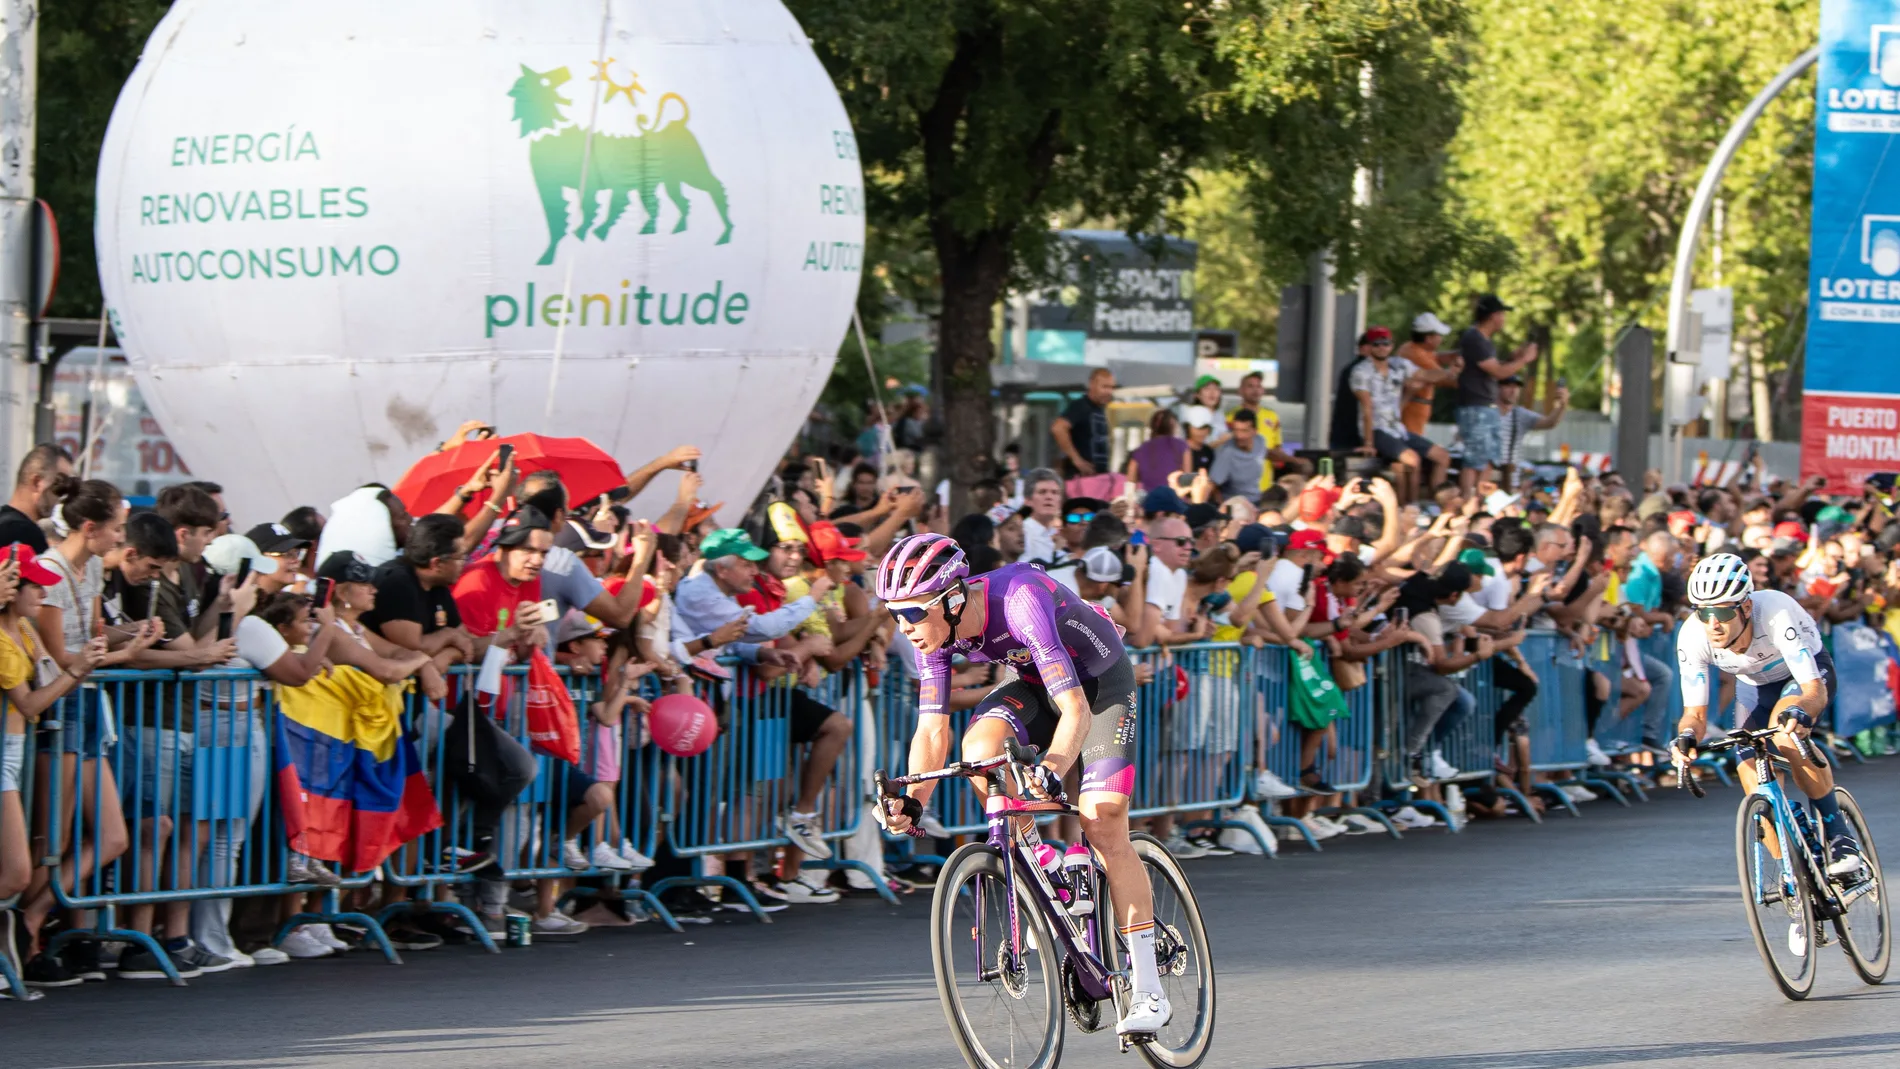 Plenitude apoyará la Vuelta a España en la Etapa de Valladolid